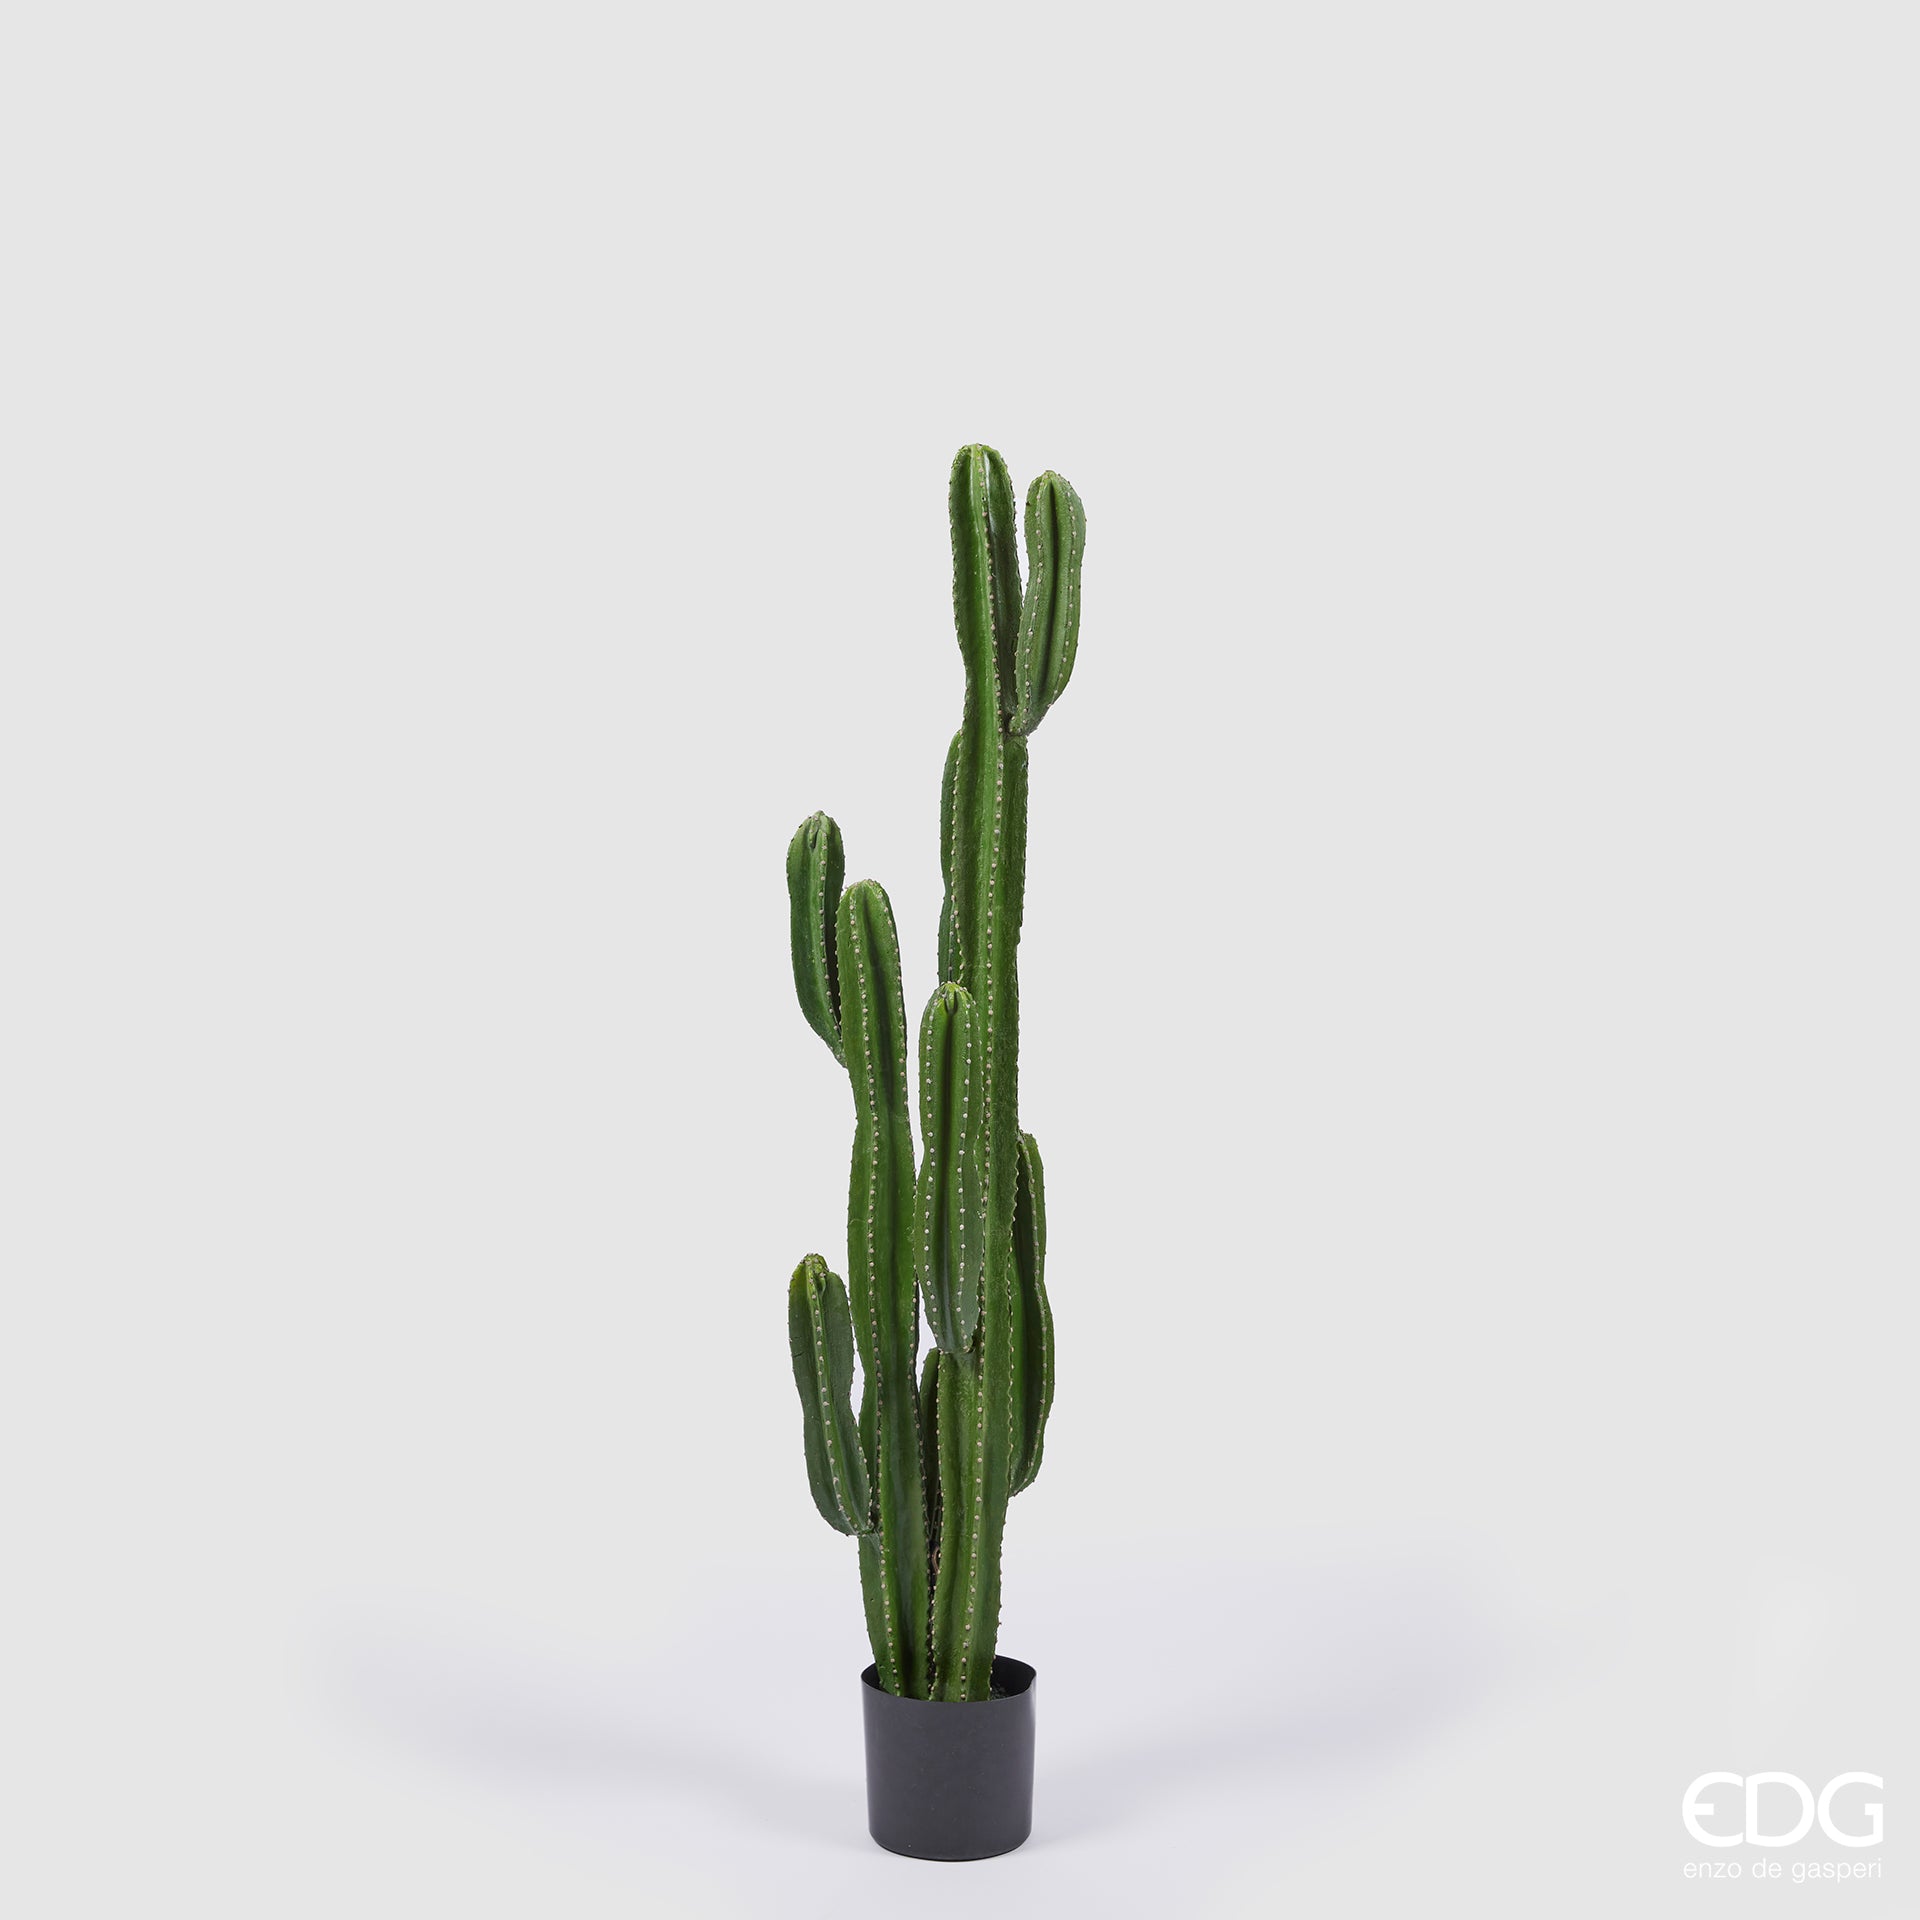 Pianta Cactus Columnaris artificiale (del Messico) in vaso. Dimensioni: cm h 155 - Vaso in plastica cm 17 x 15 h. In negozio e online su tuttochic.it.